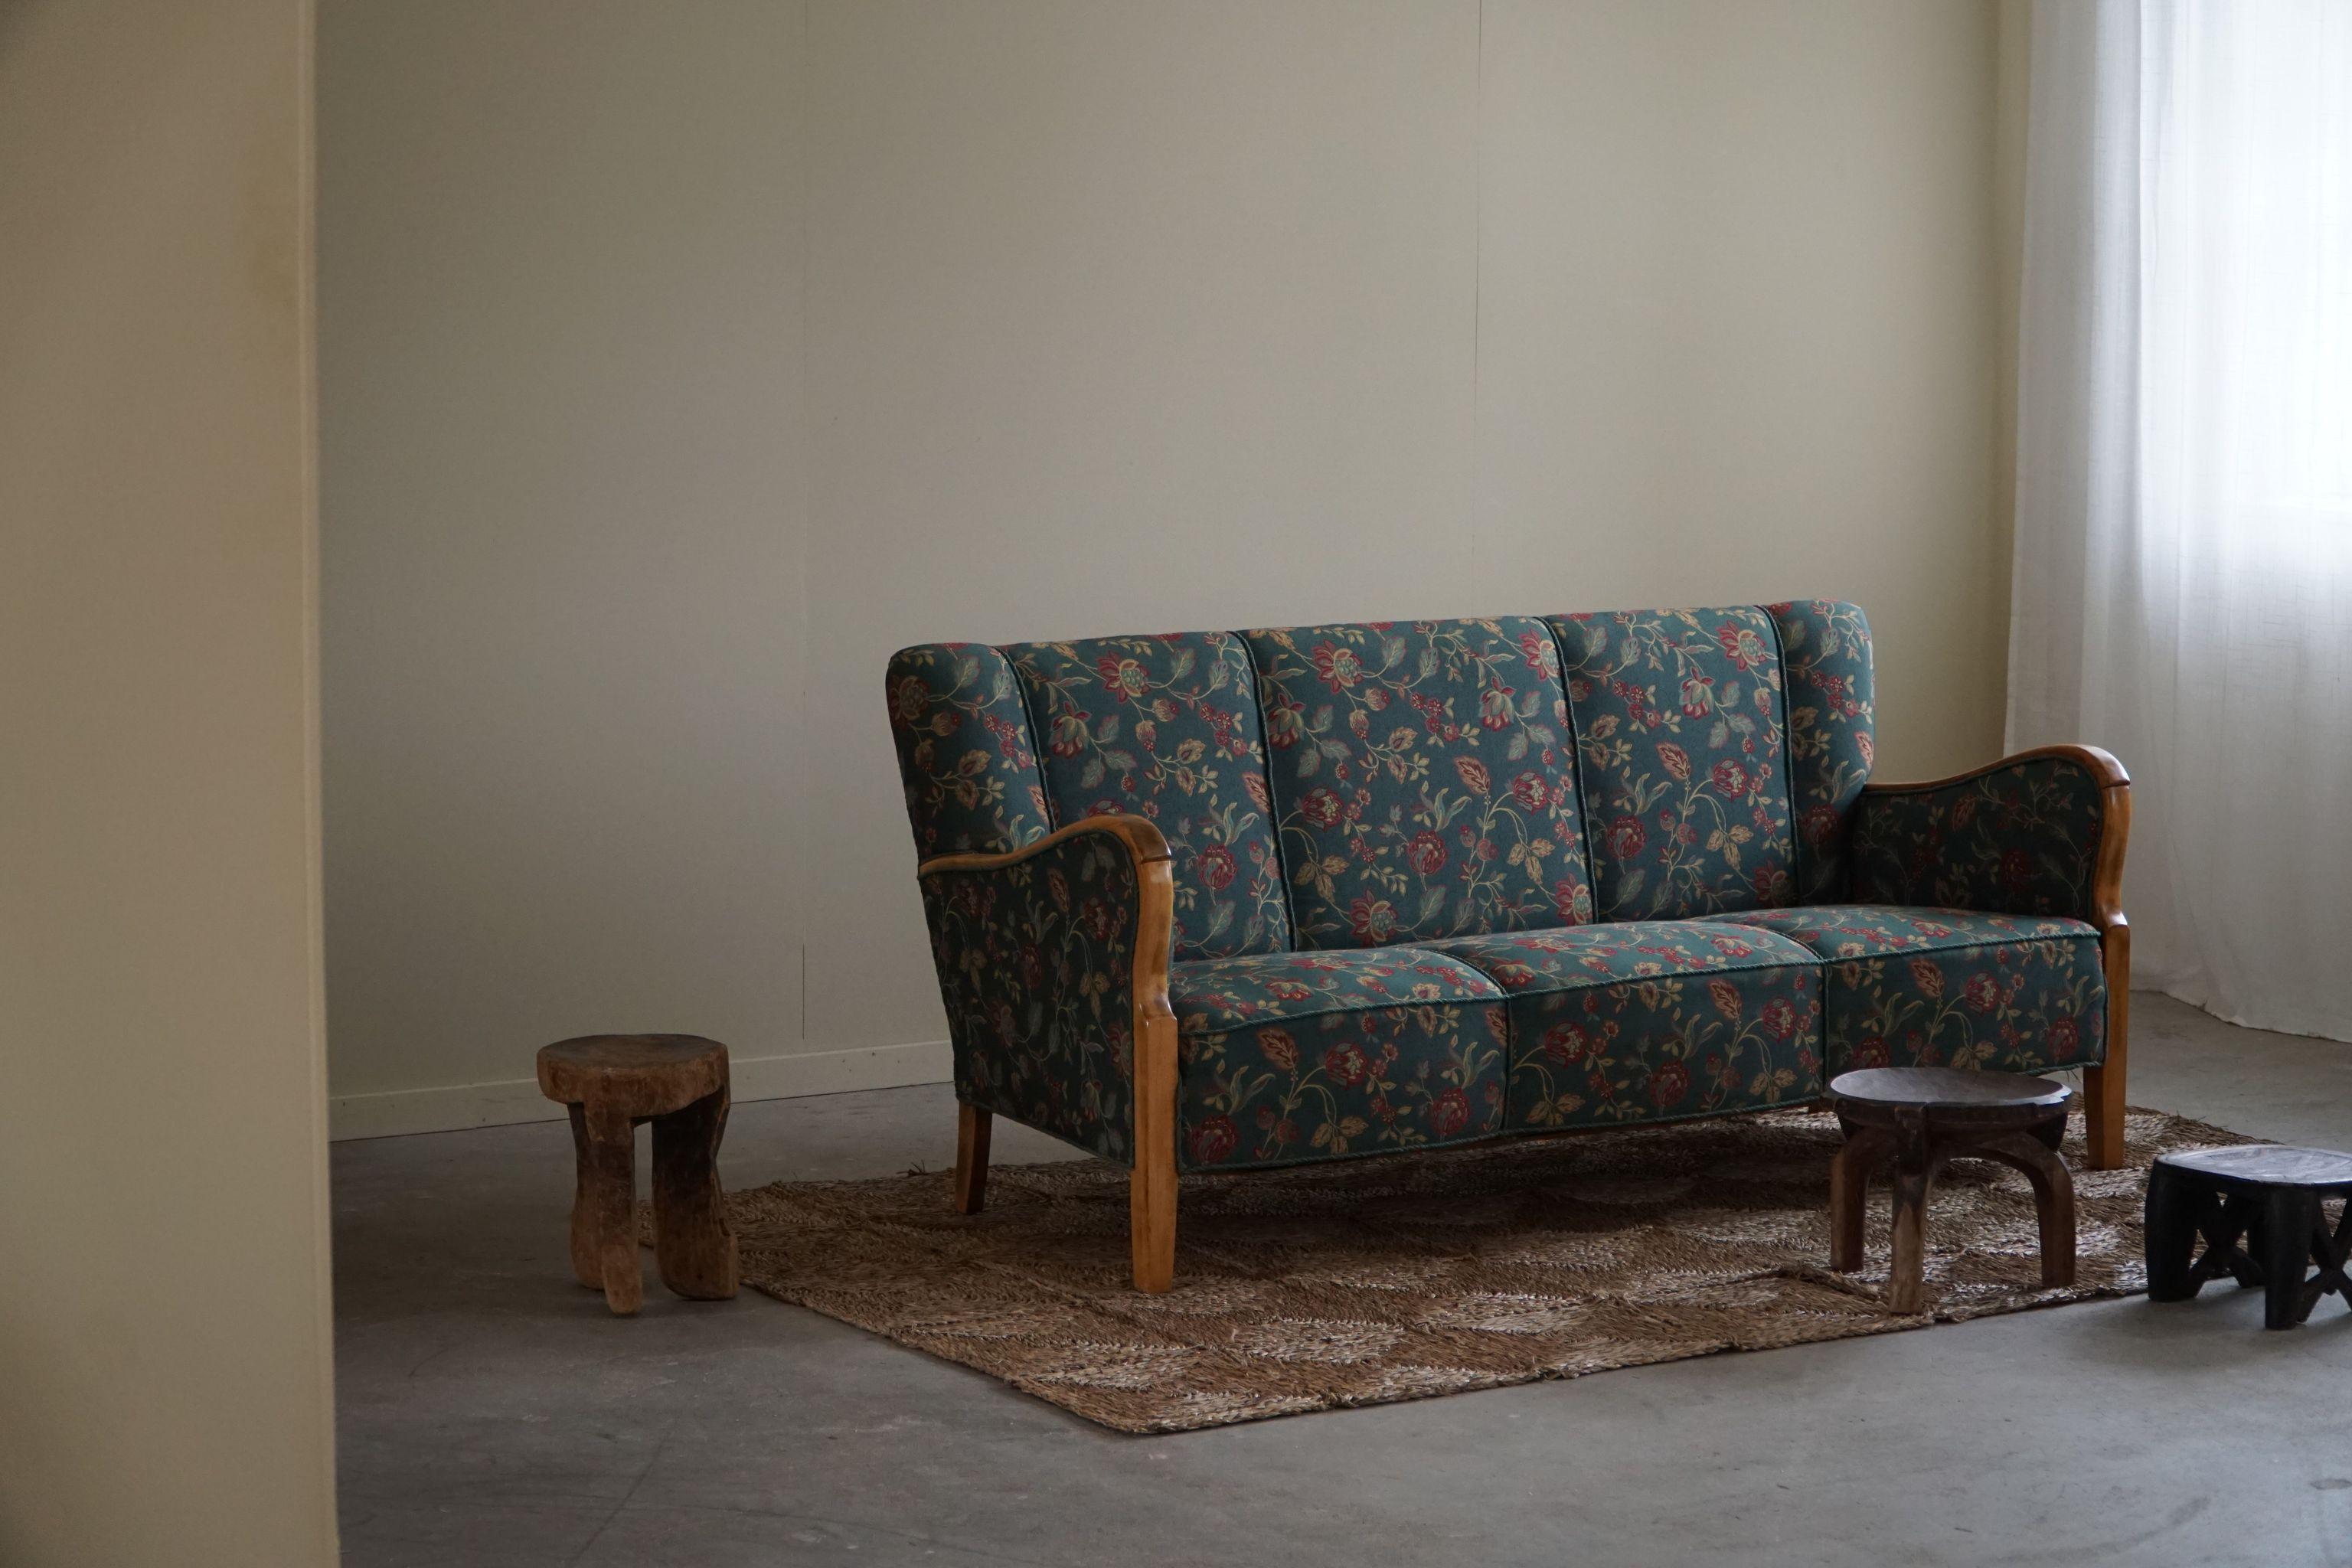 Ein zeitloses modernes dänisches Dreisitzer-Sofa in Buche und dem originalen bunten Blumenstoff. Von einem dänischen Tischler in den 1960er Jahren hergestellt.

Dieses exquisite Sofa verkörpert die Essenz des dänischen Designs, indem es schlanke